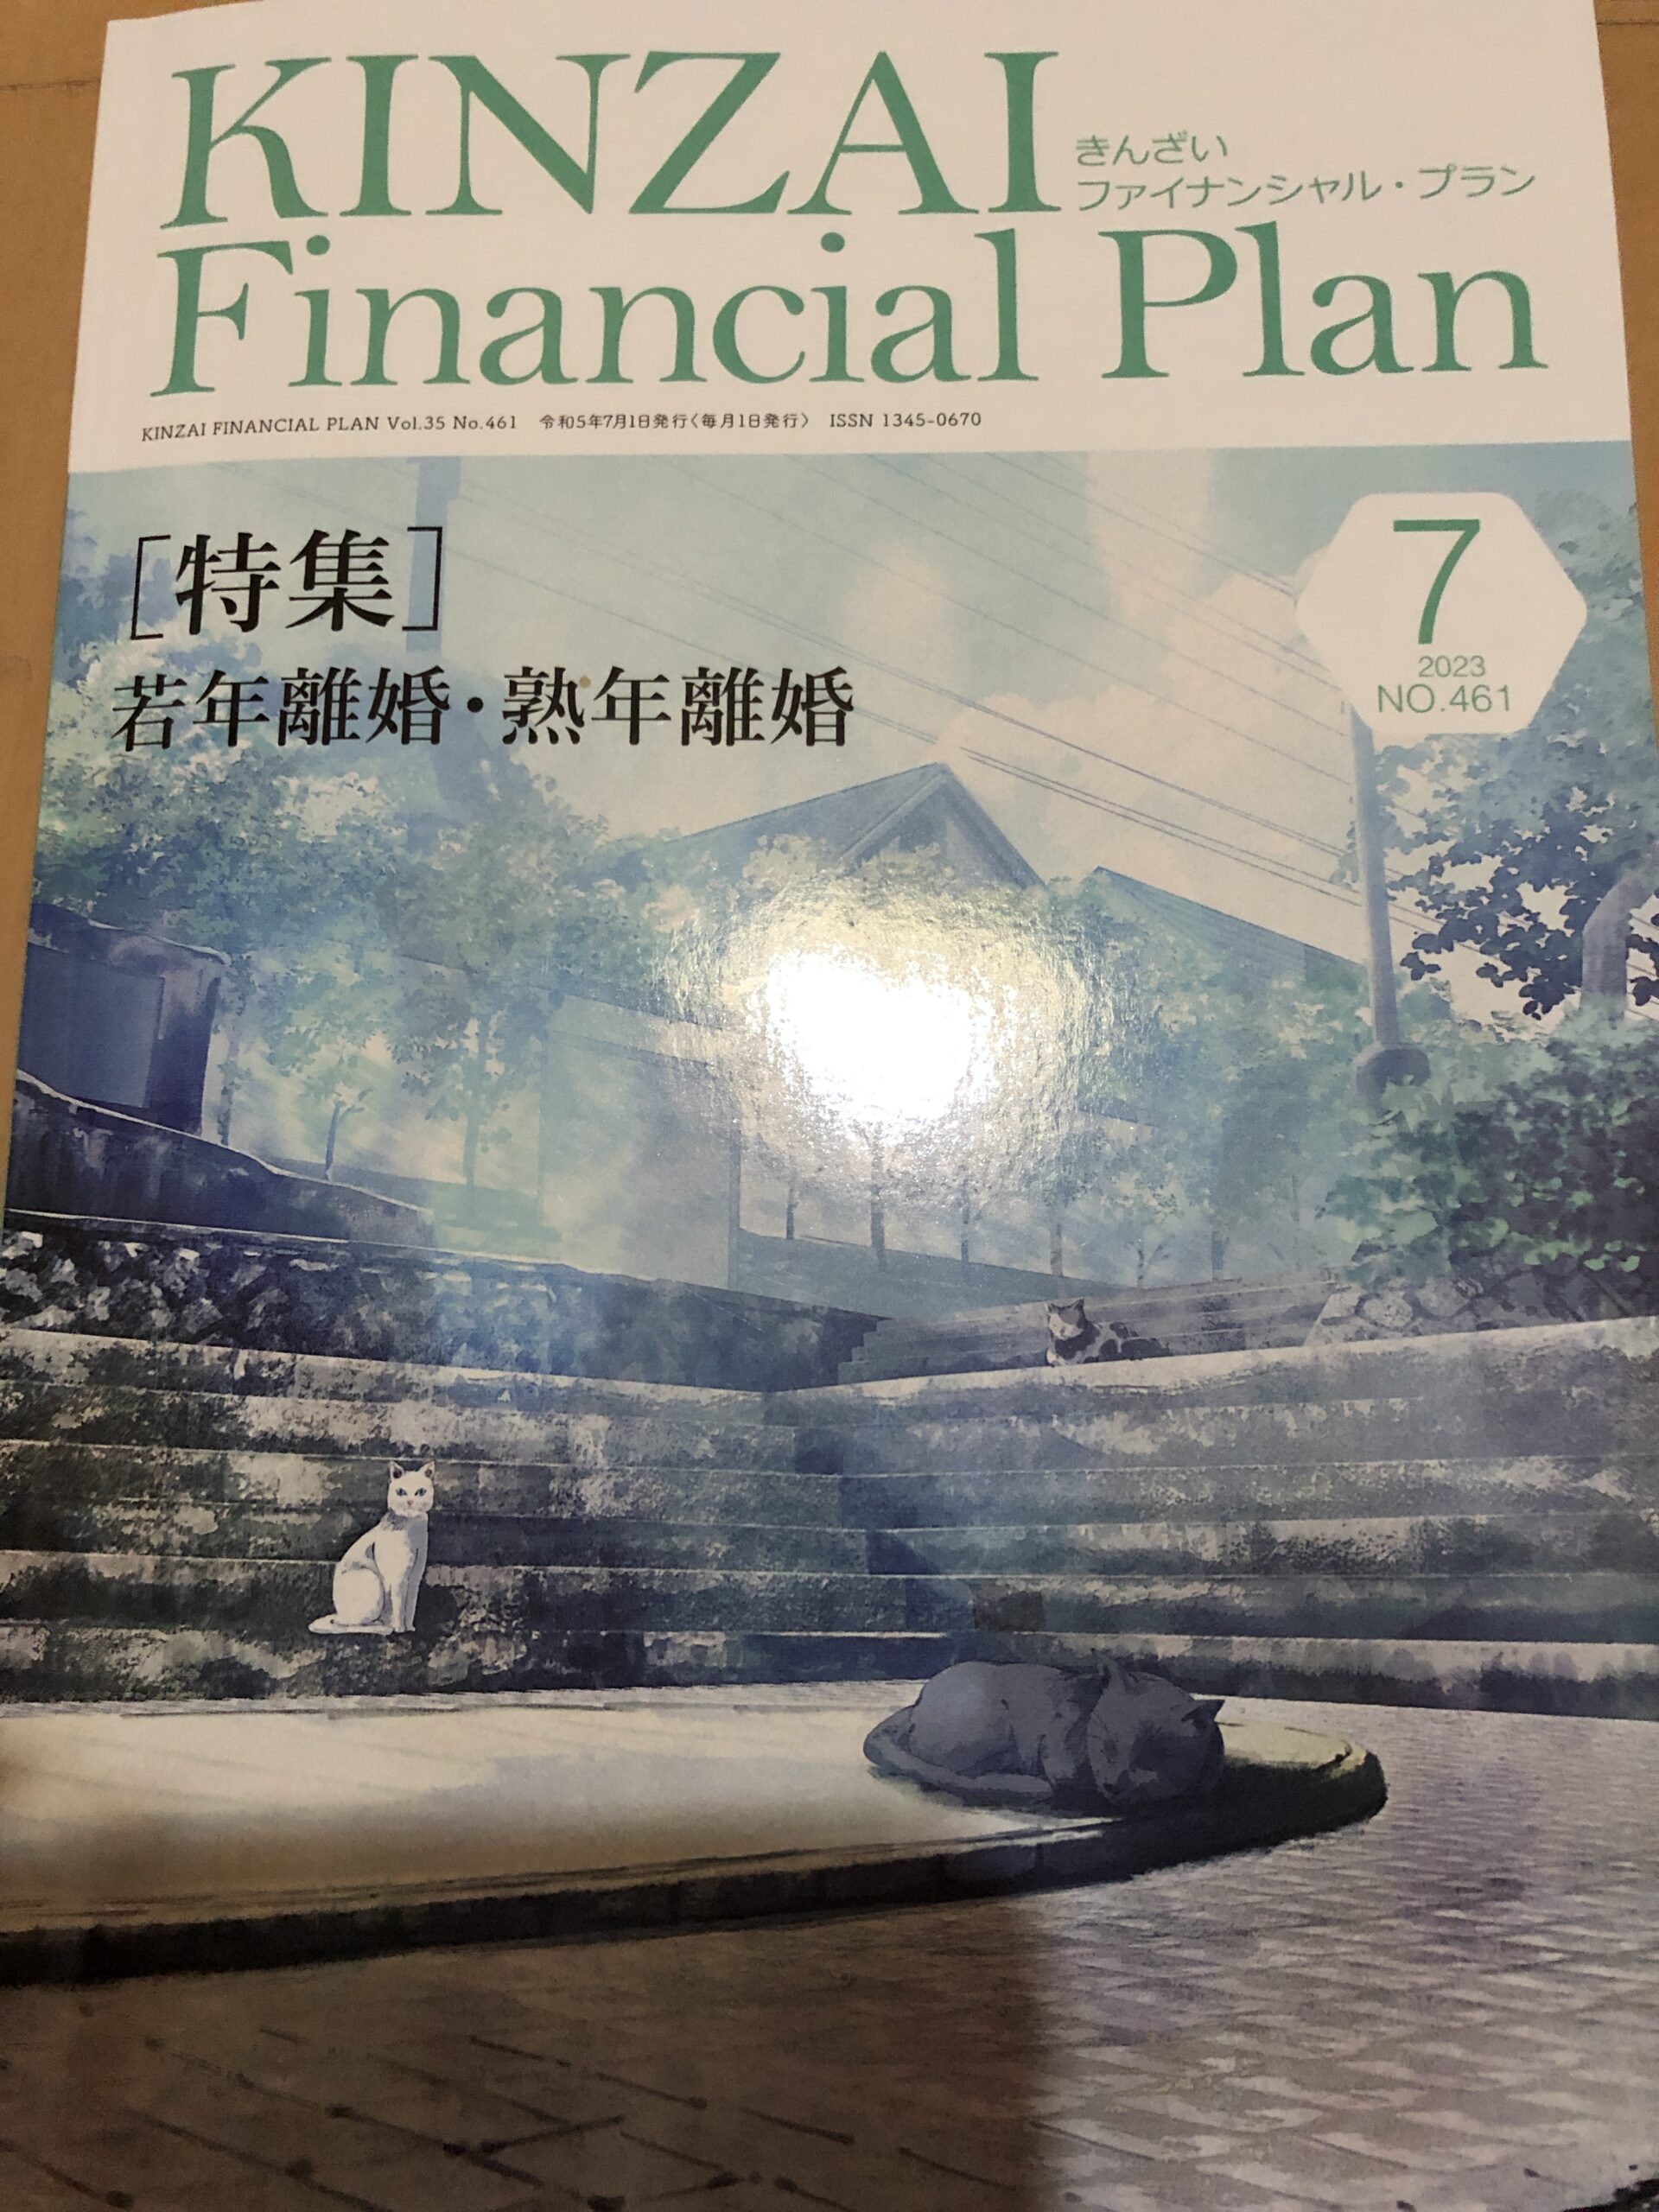 【メディア掲載】KINZAI Financial Planさんで記事が掲載されました